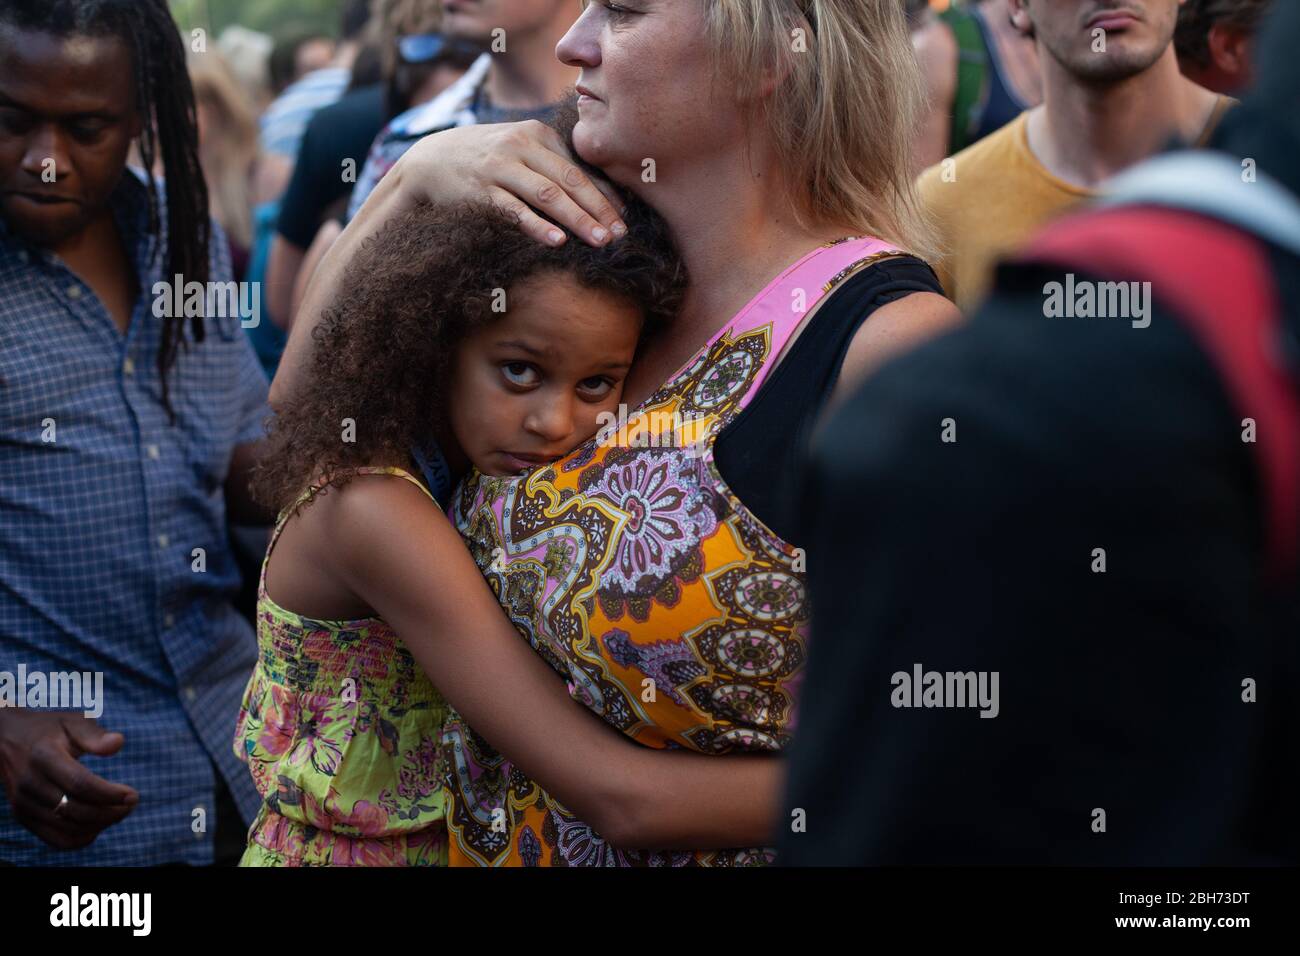 LONDRES, REINO UNIDO – 26 DE AGOSTO de 2013: Madre sostiene a su hija entre la multitud en Ledbury Road durante el carnaval en Notting Hill Foto de stock